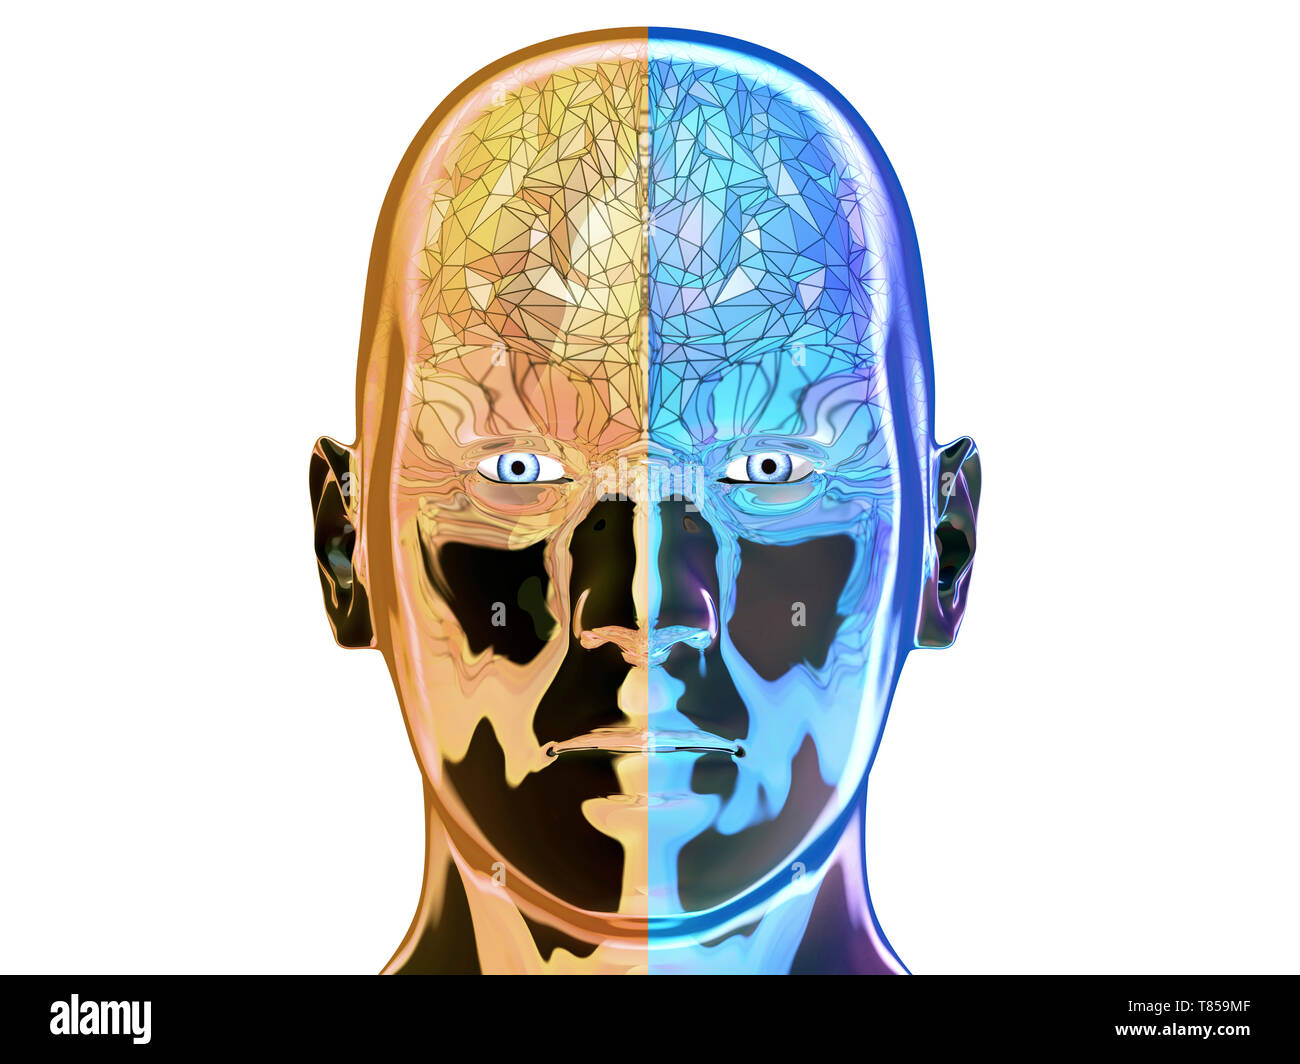 Human brain, illustration Stock Photo